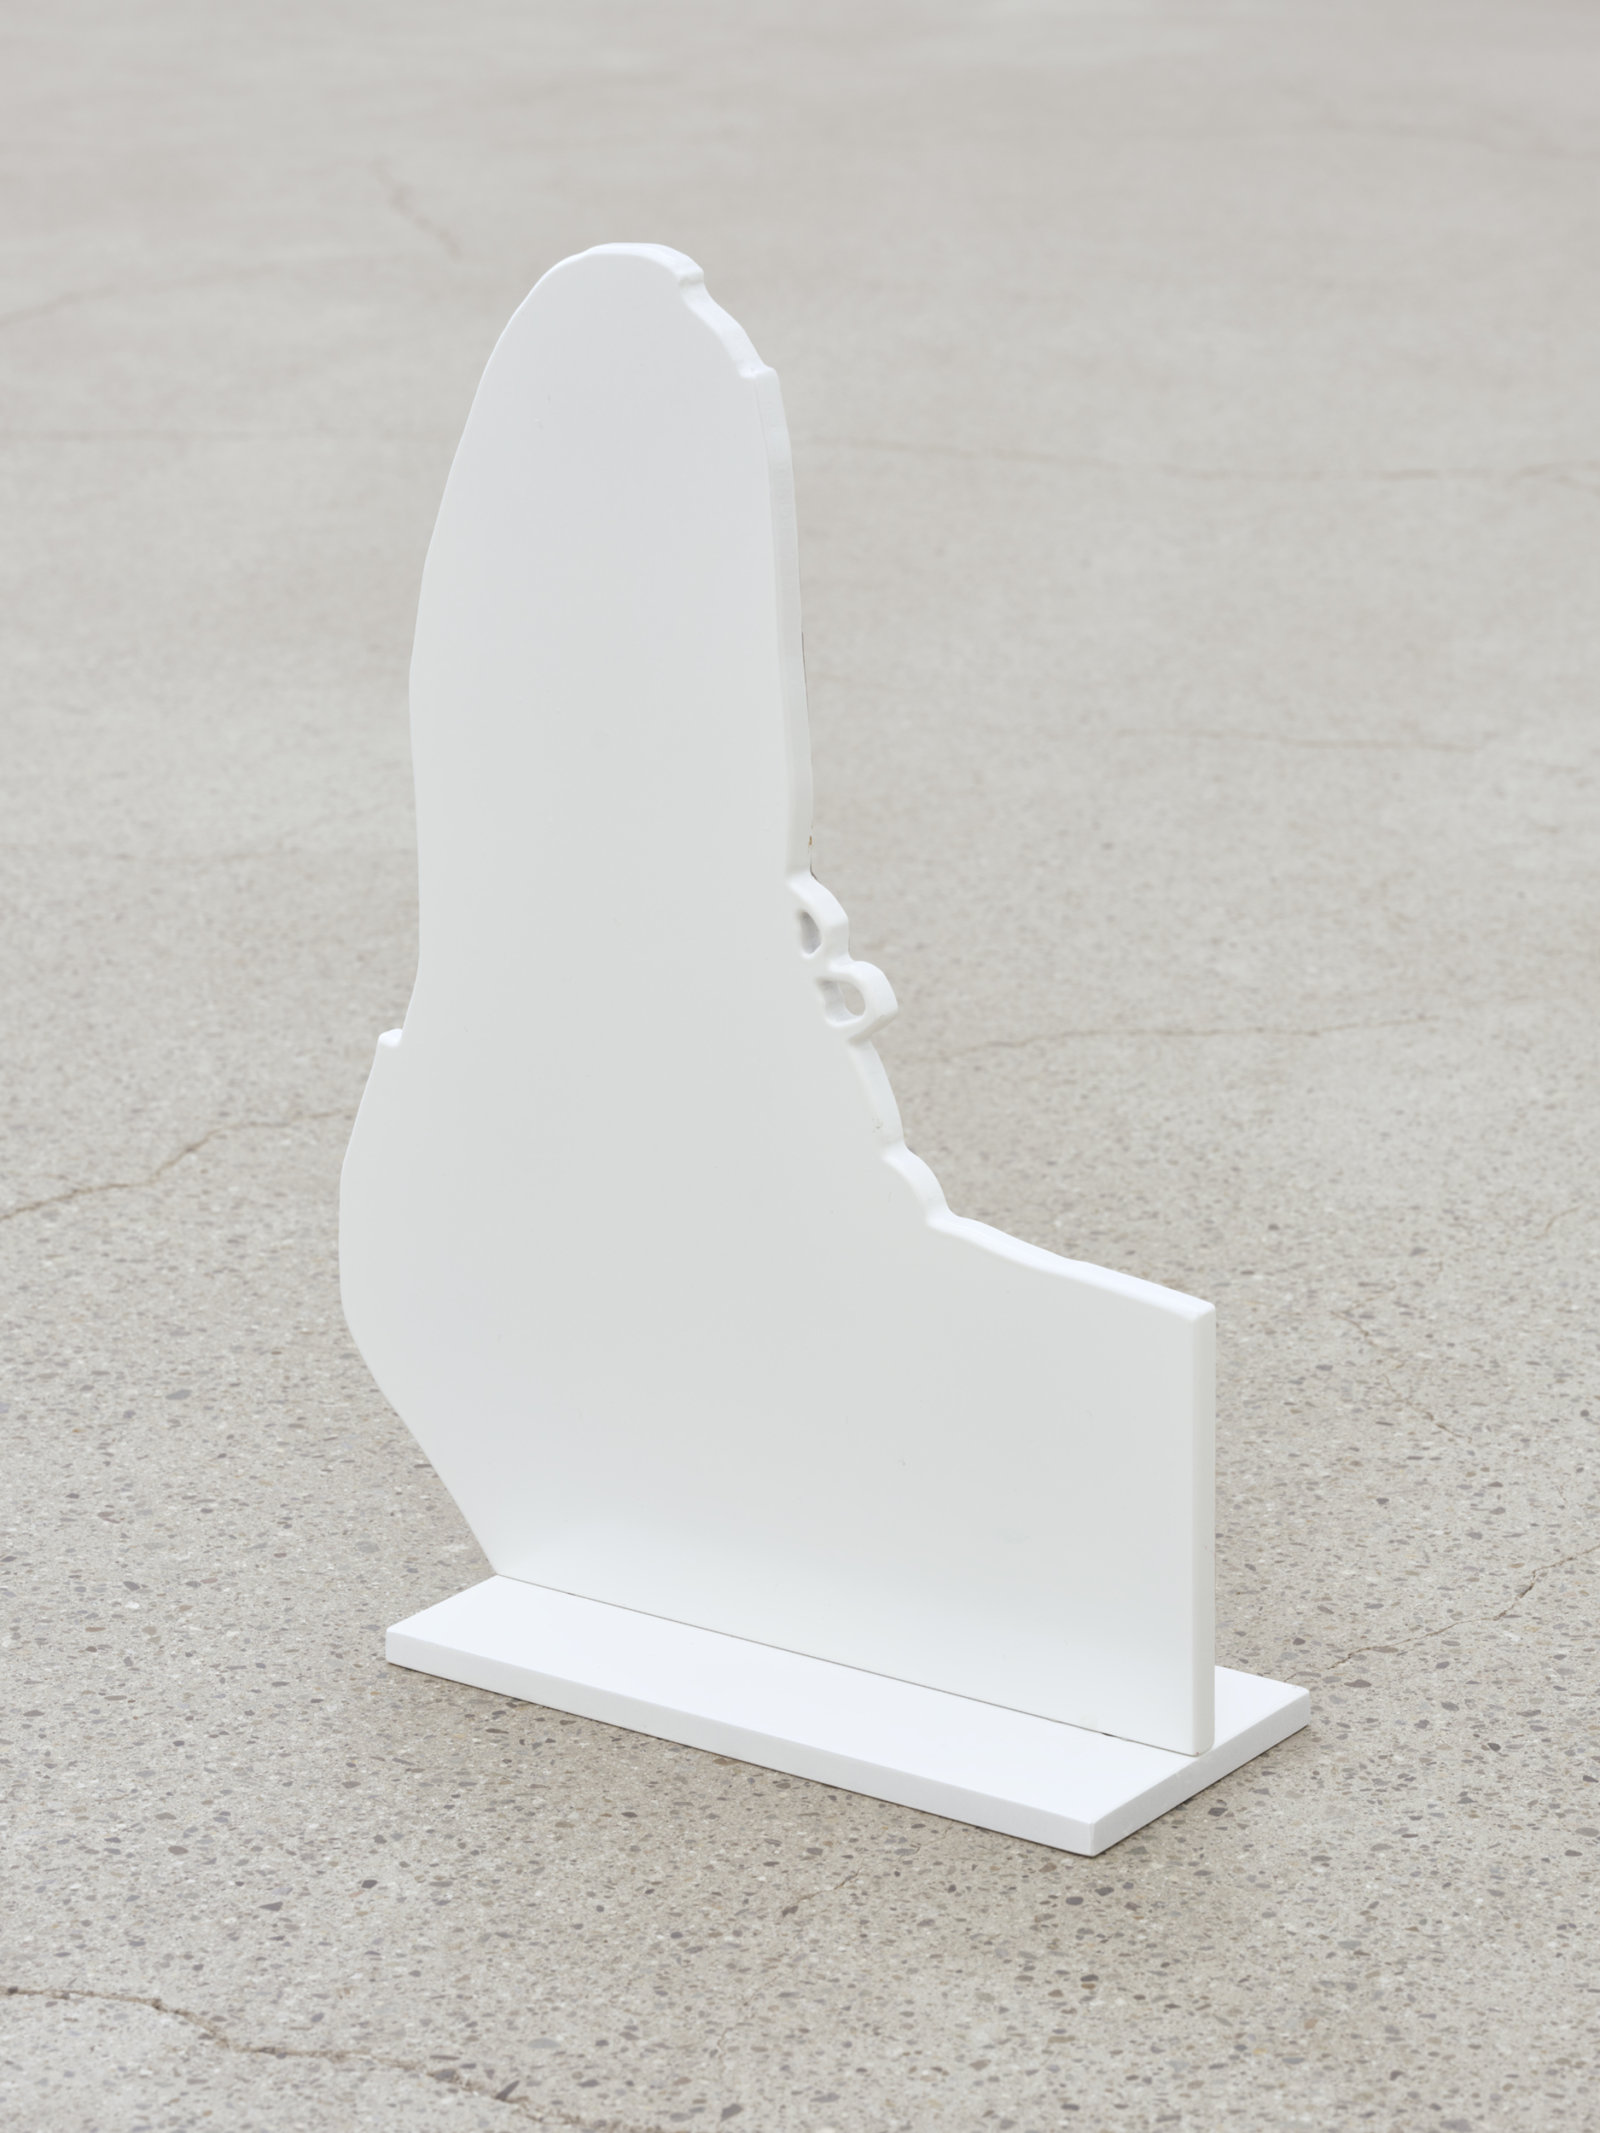 Damian Moppett, Foot, 2023, oil and enamel on aluminum, 15 x 12 in. (38 x 27 cm)